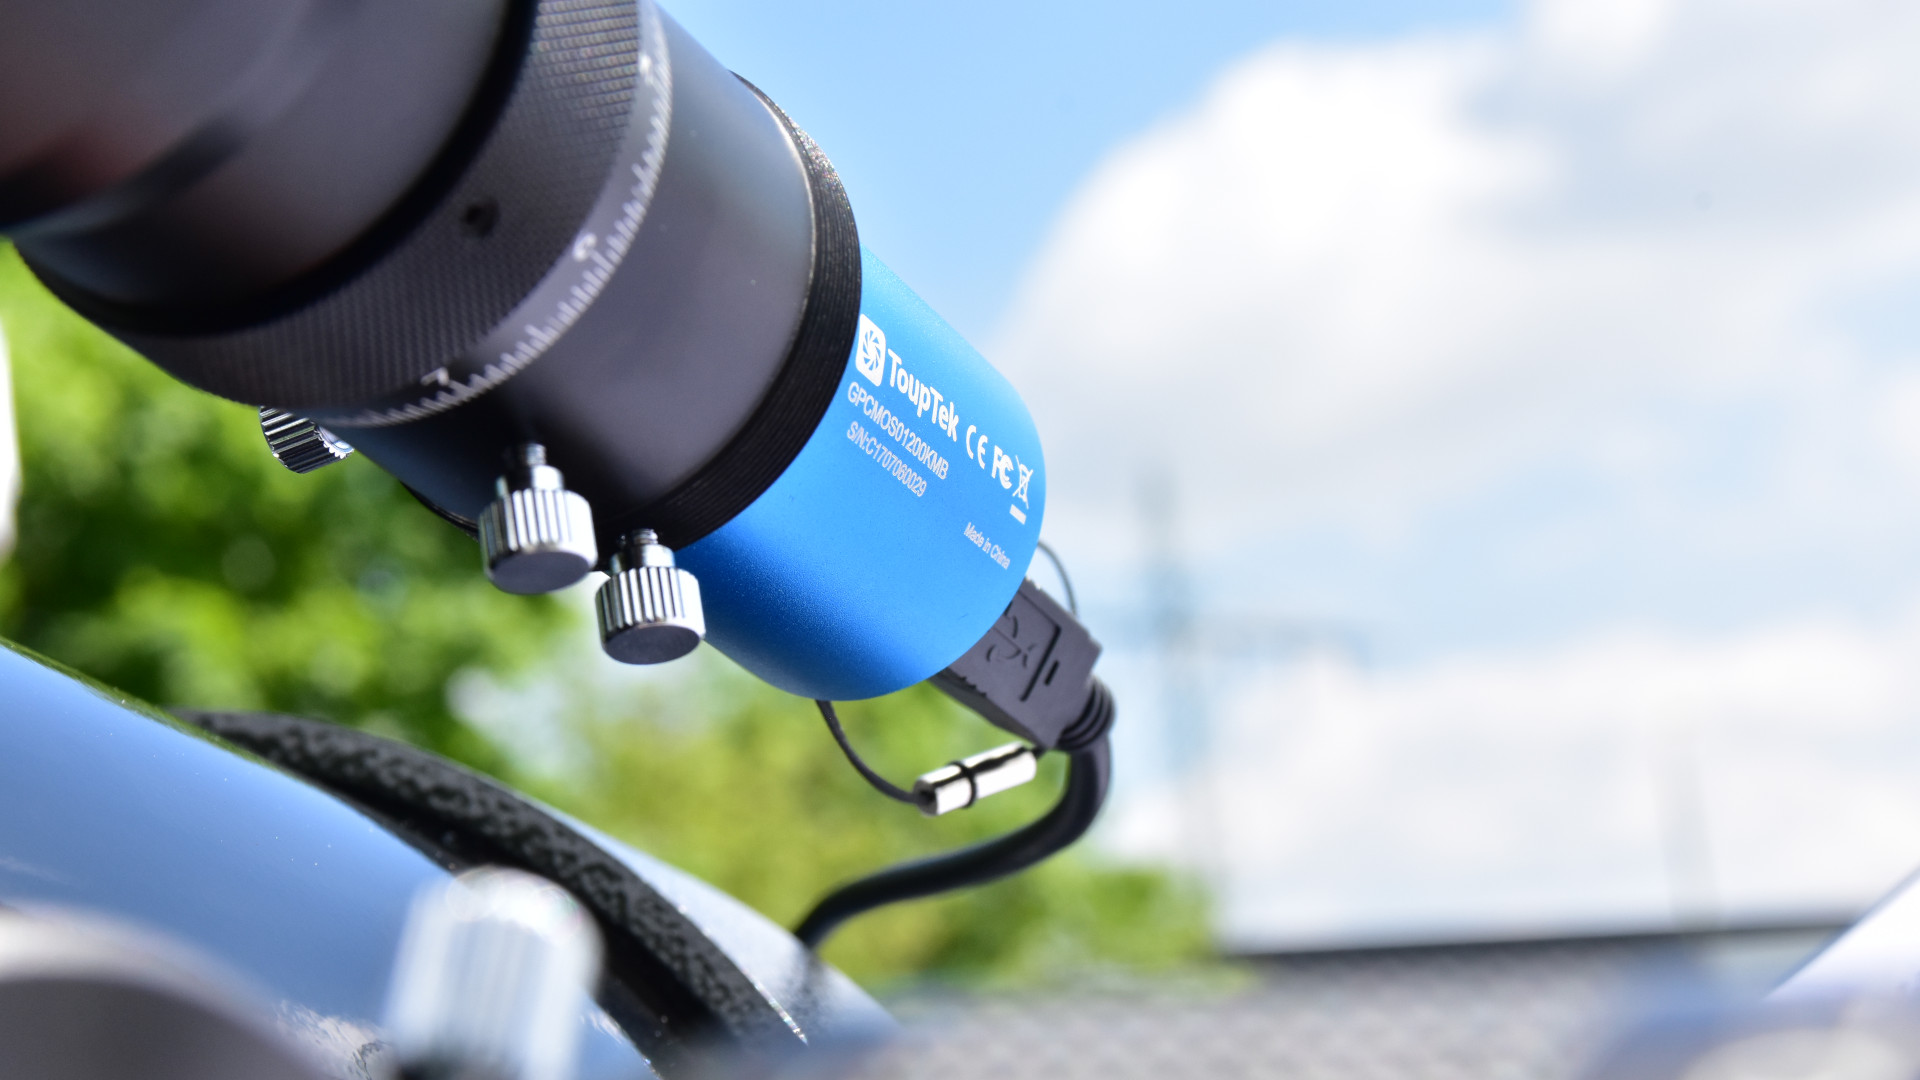 Attaching a digital camera to a telescope